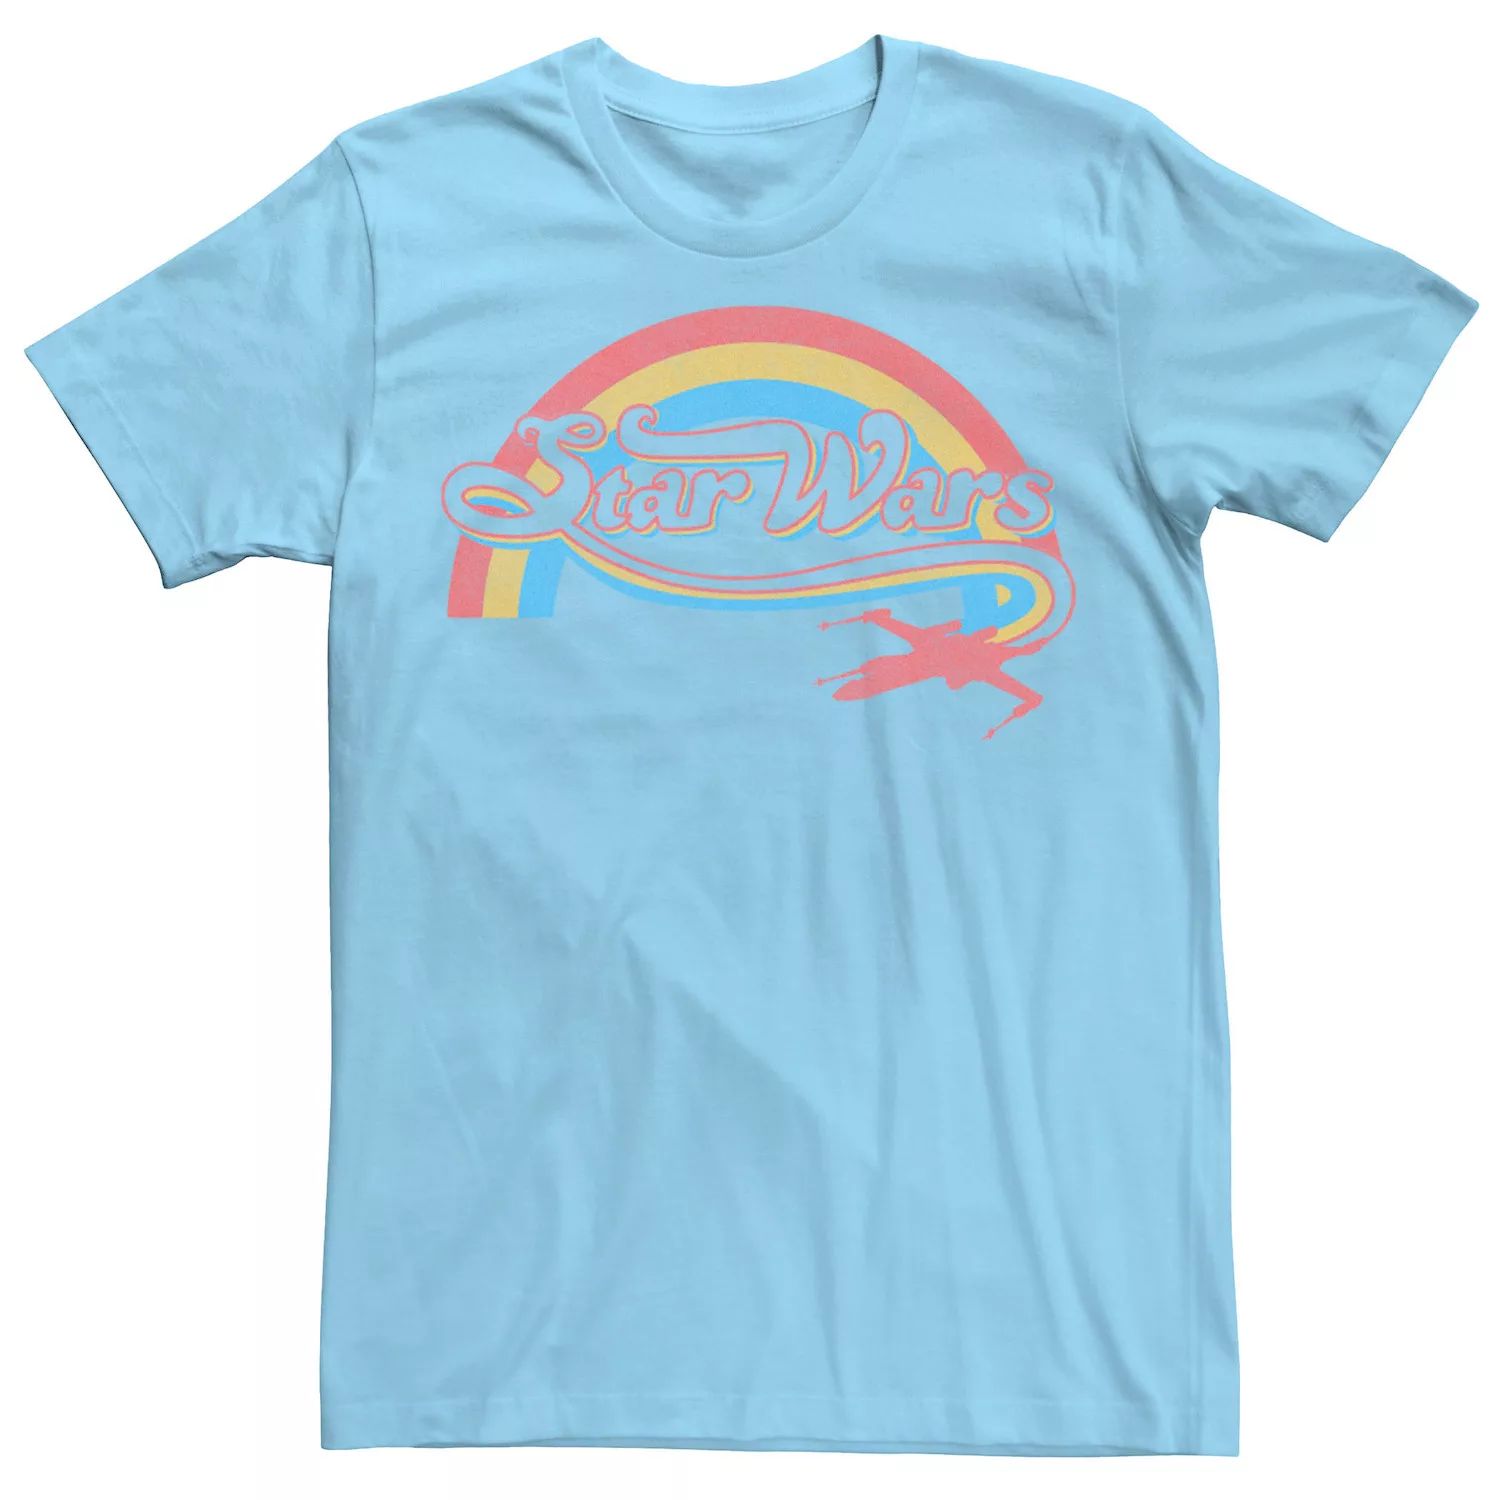 Мужская футболка с логотипом в стиле радуги в стиле ретро Star Wars